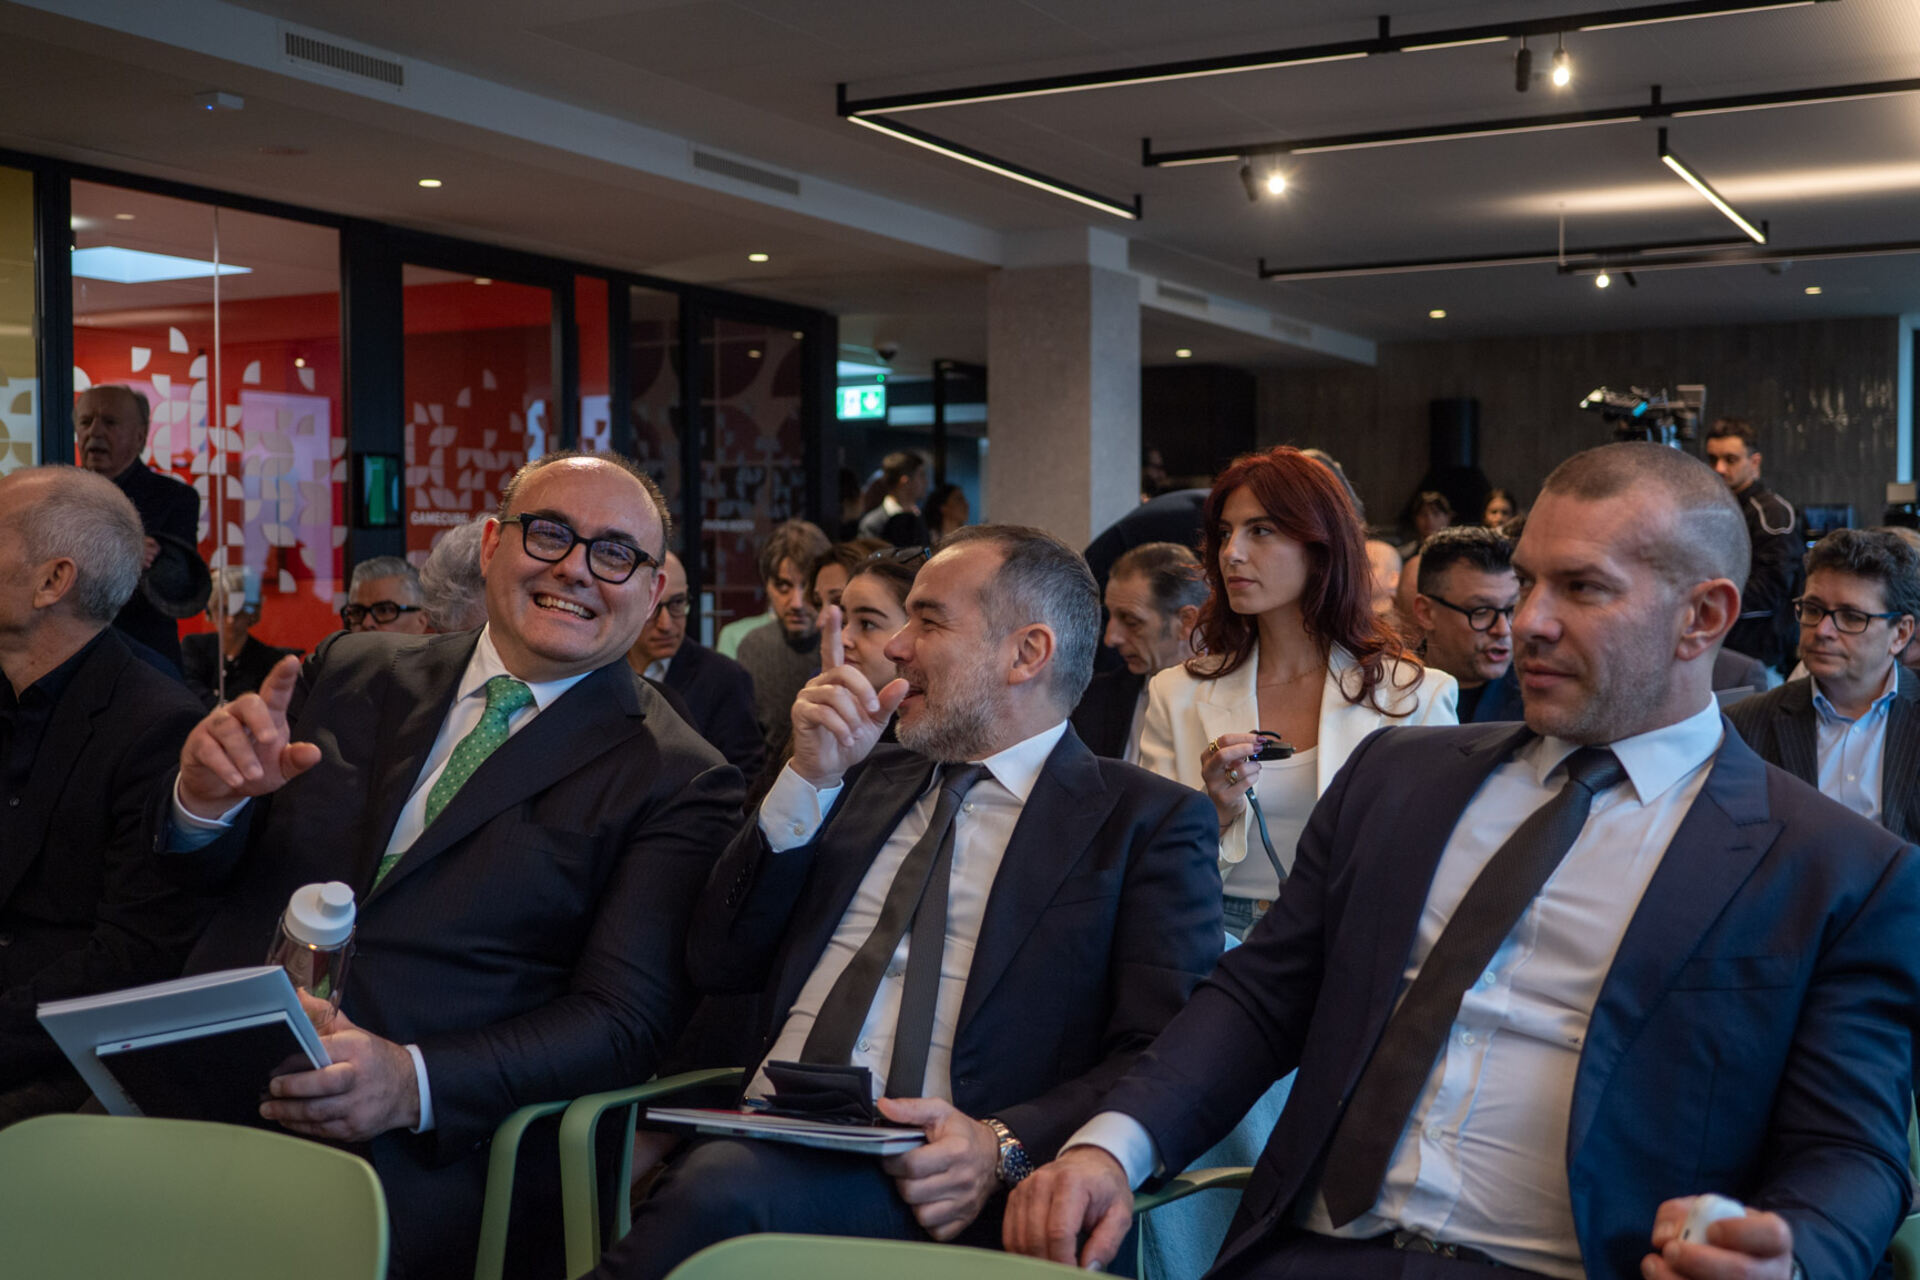 Dagorà Lifestyle Innovation Hub: Michele Raballo, Francesco De Maria en Alessio Ruffini